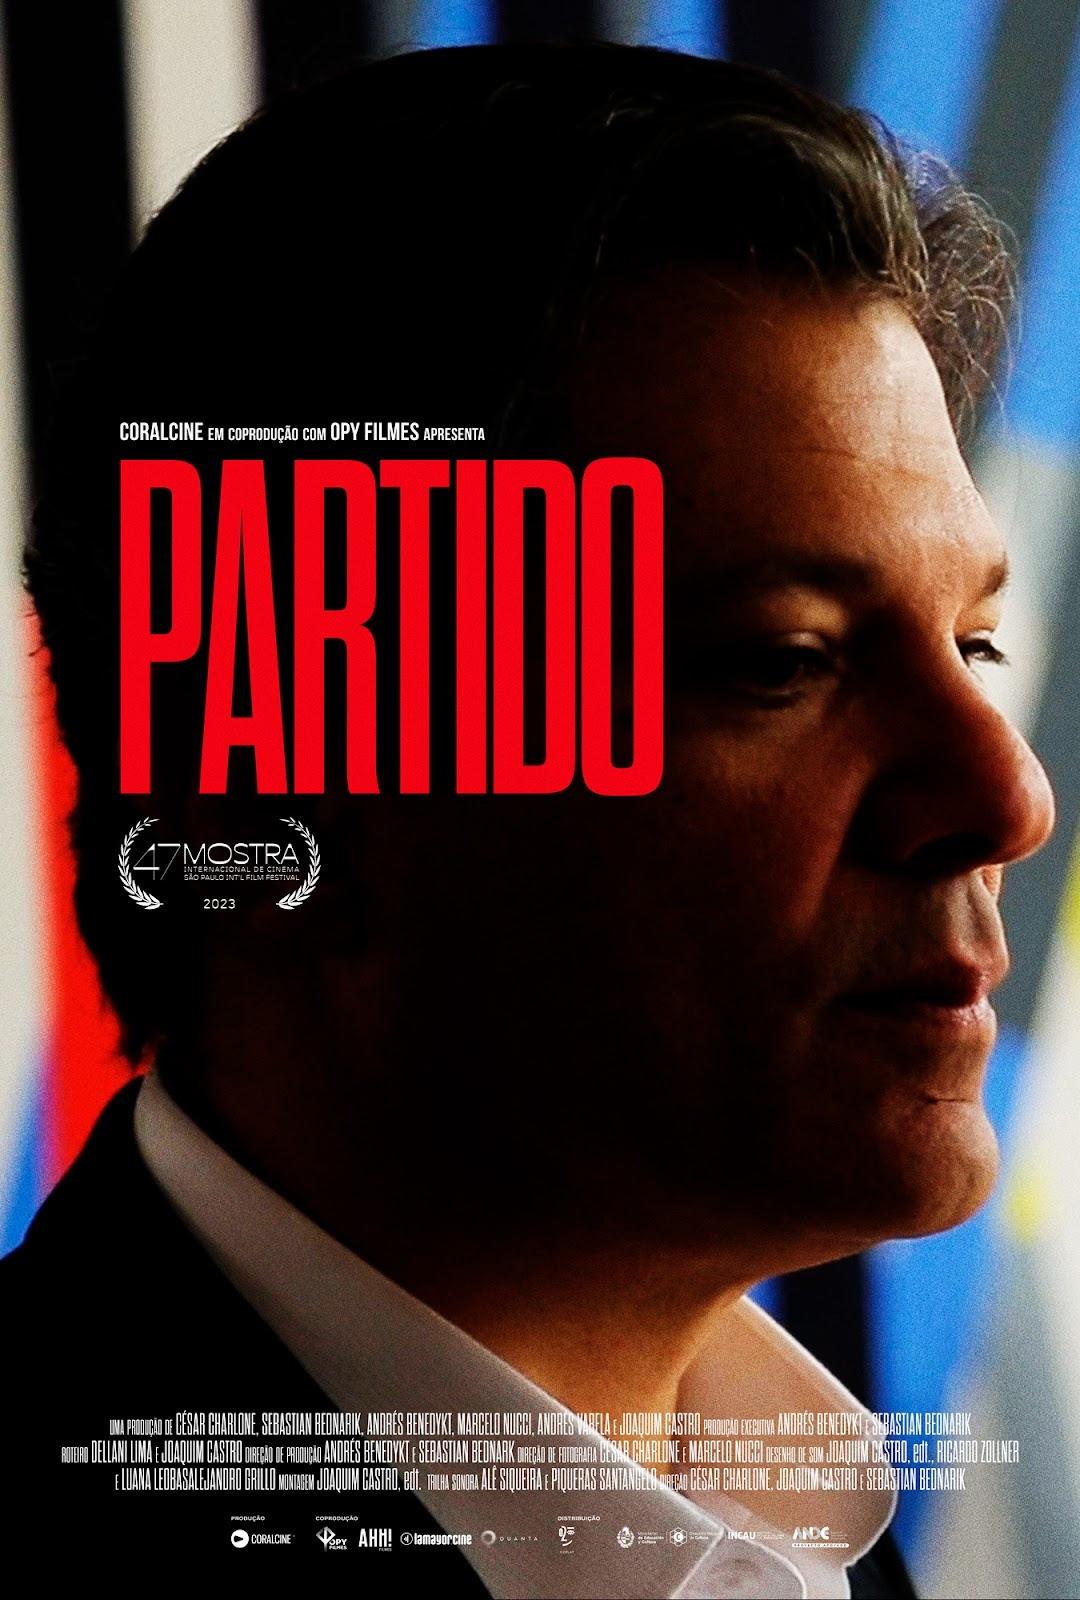 Documentário “Partido” de Fernando Haddad na 47ª Mostra de São Paulo